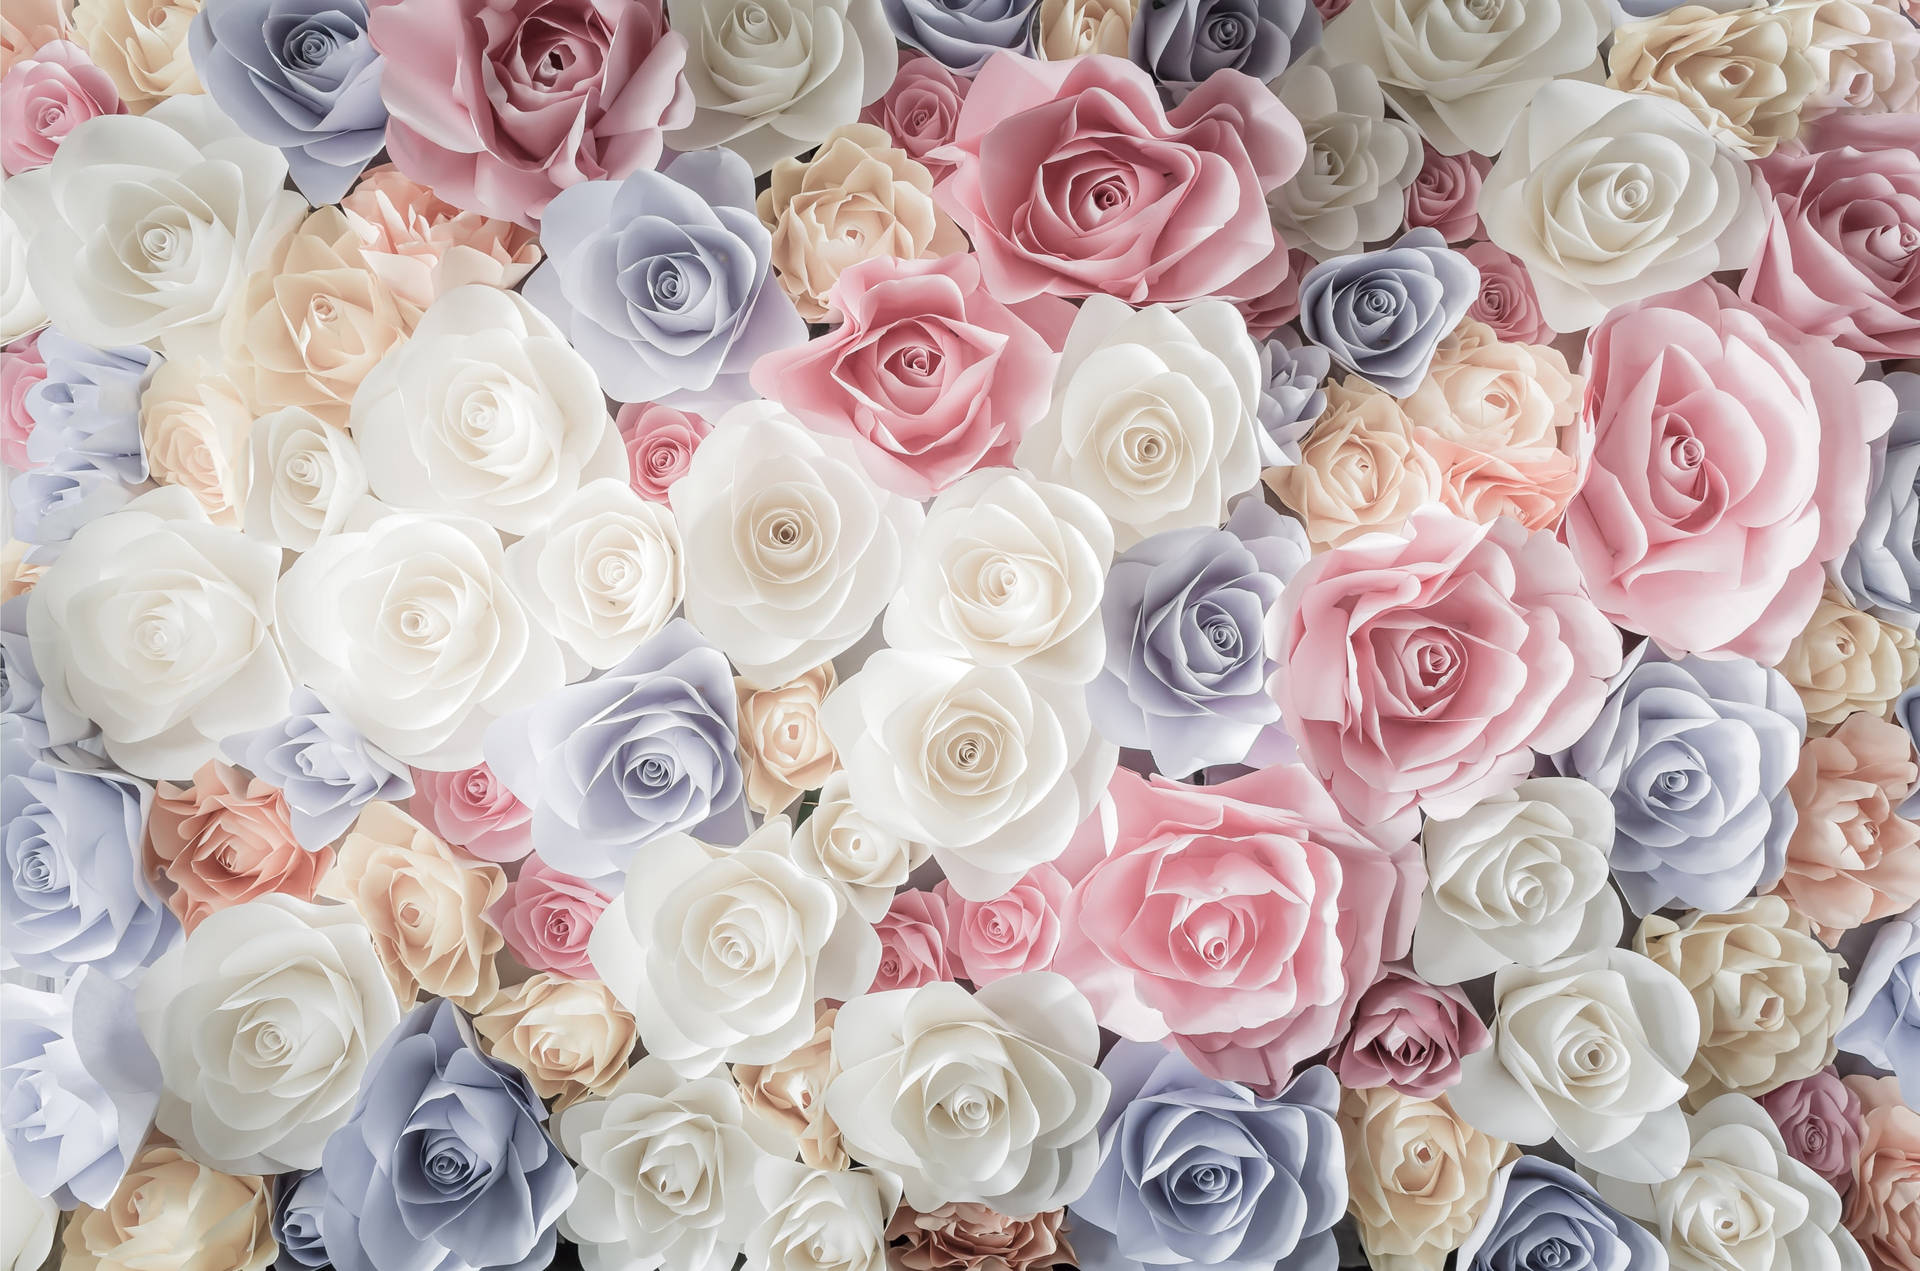 HD rose wallpapers | Peakpx